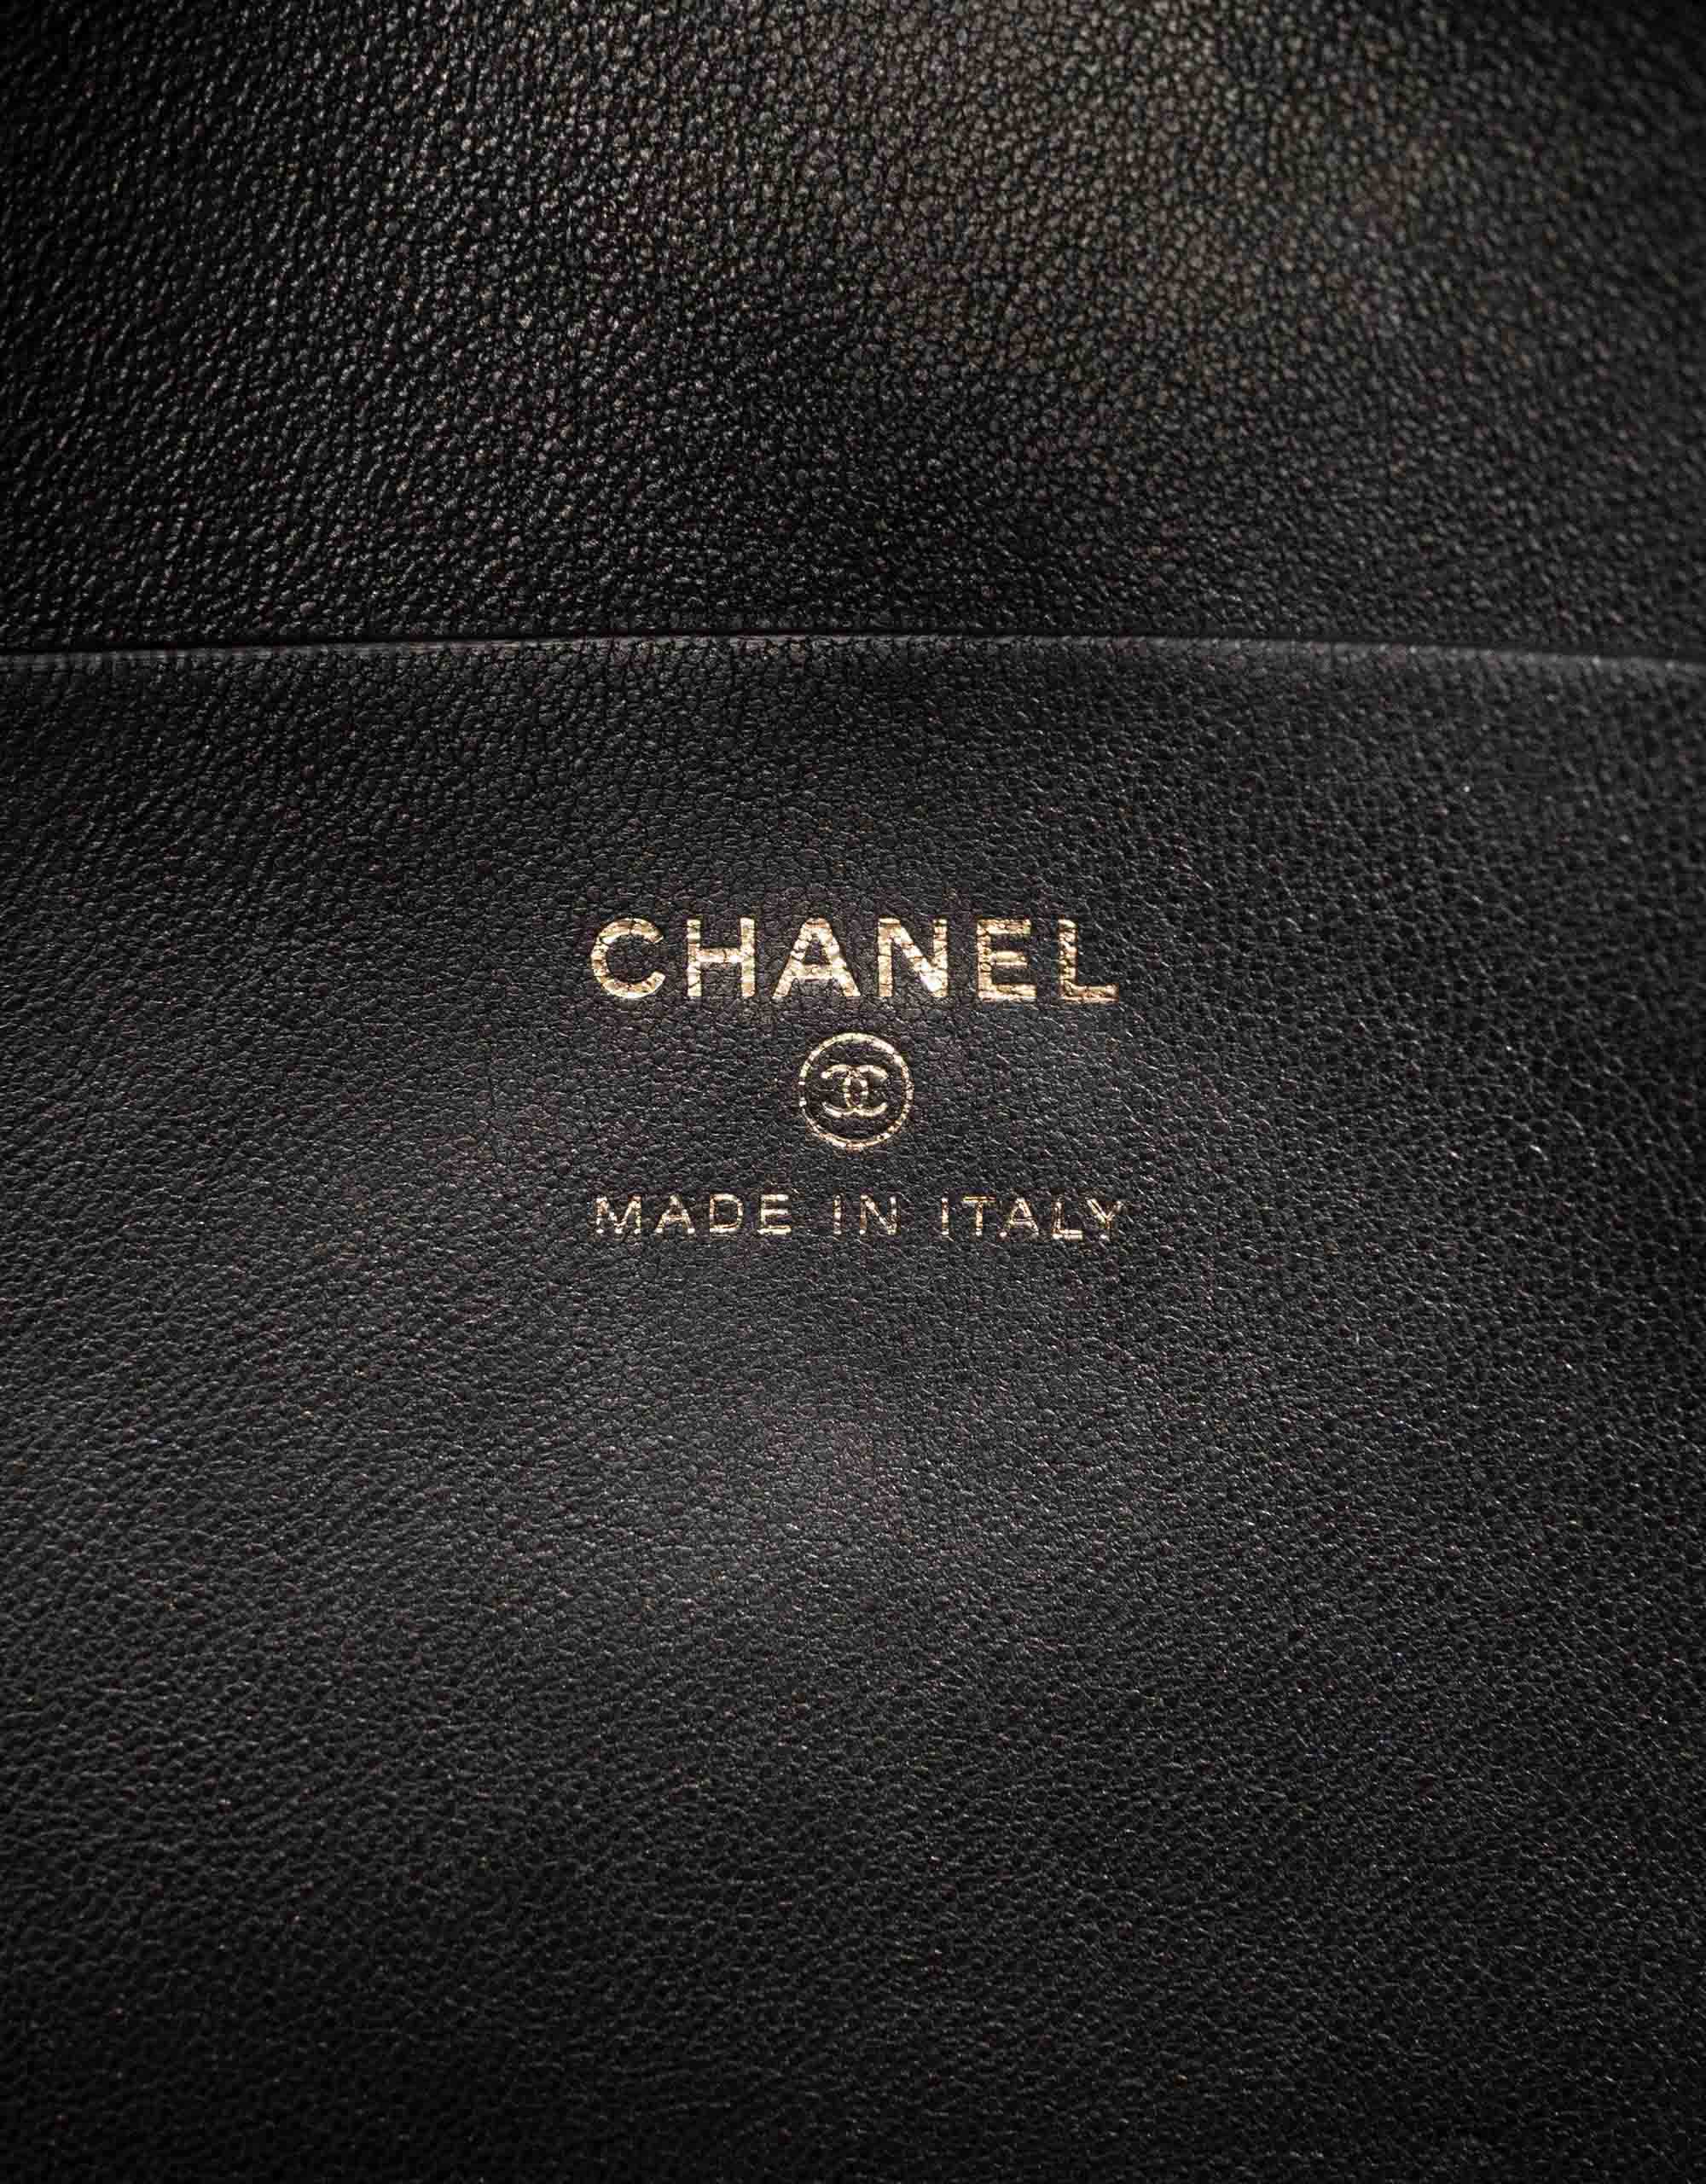 Chanel Pochette Agneau Noir